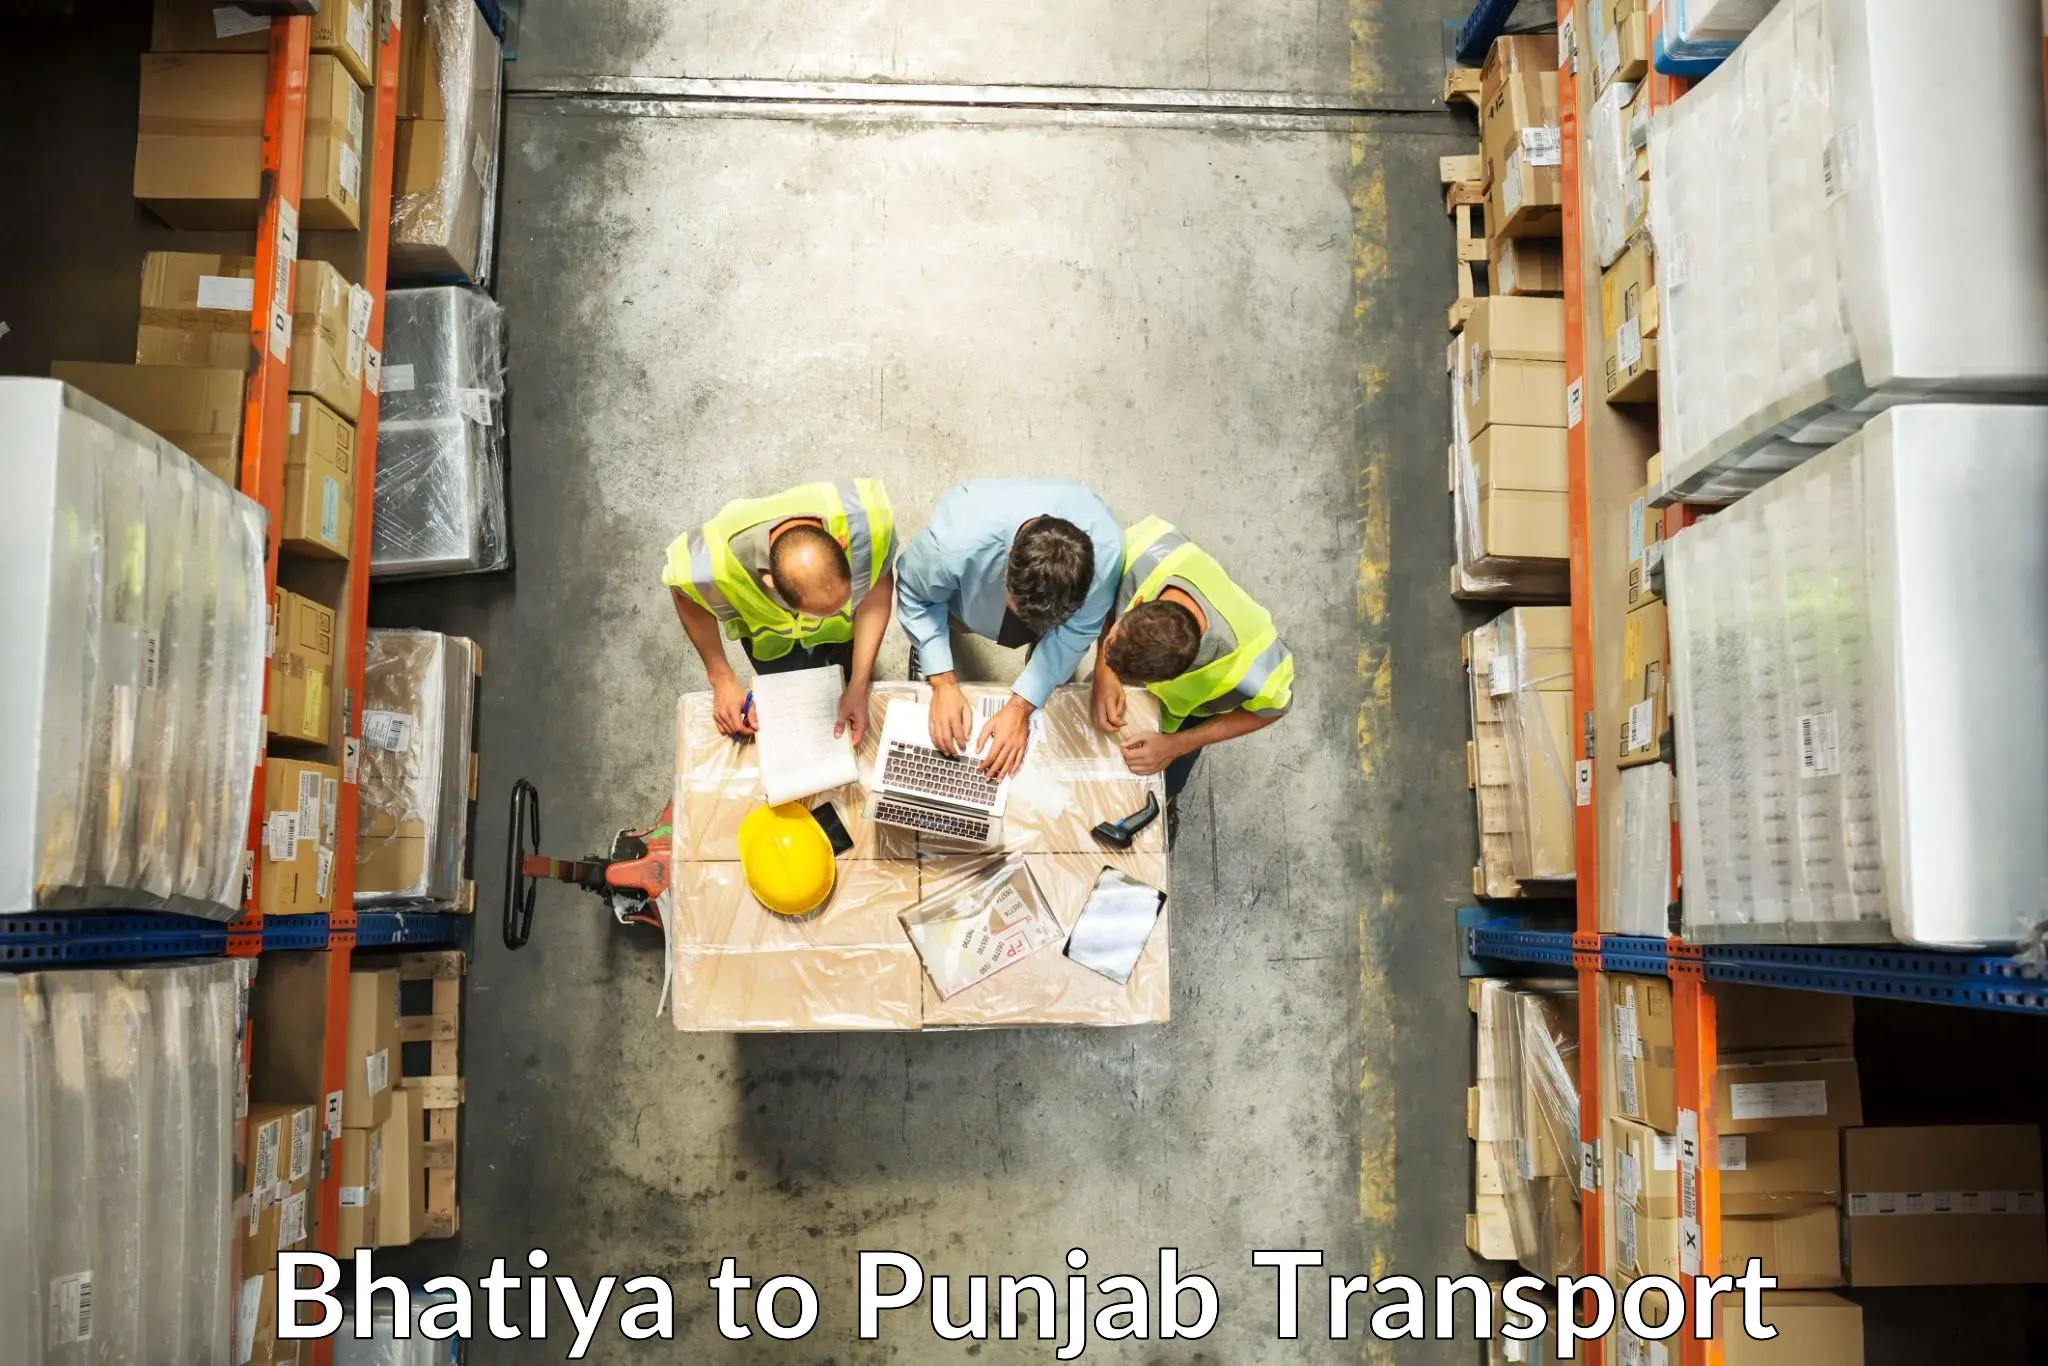 Daily parcel service transport Bhatiya to Anandpur Sahib